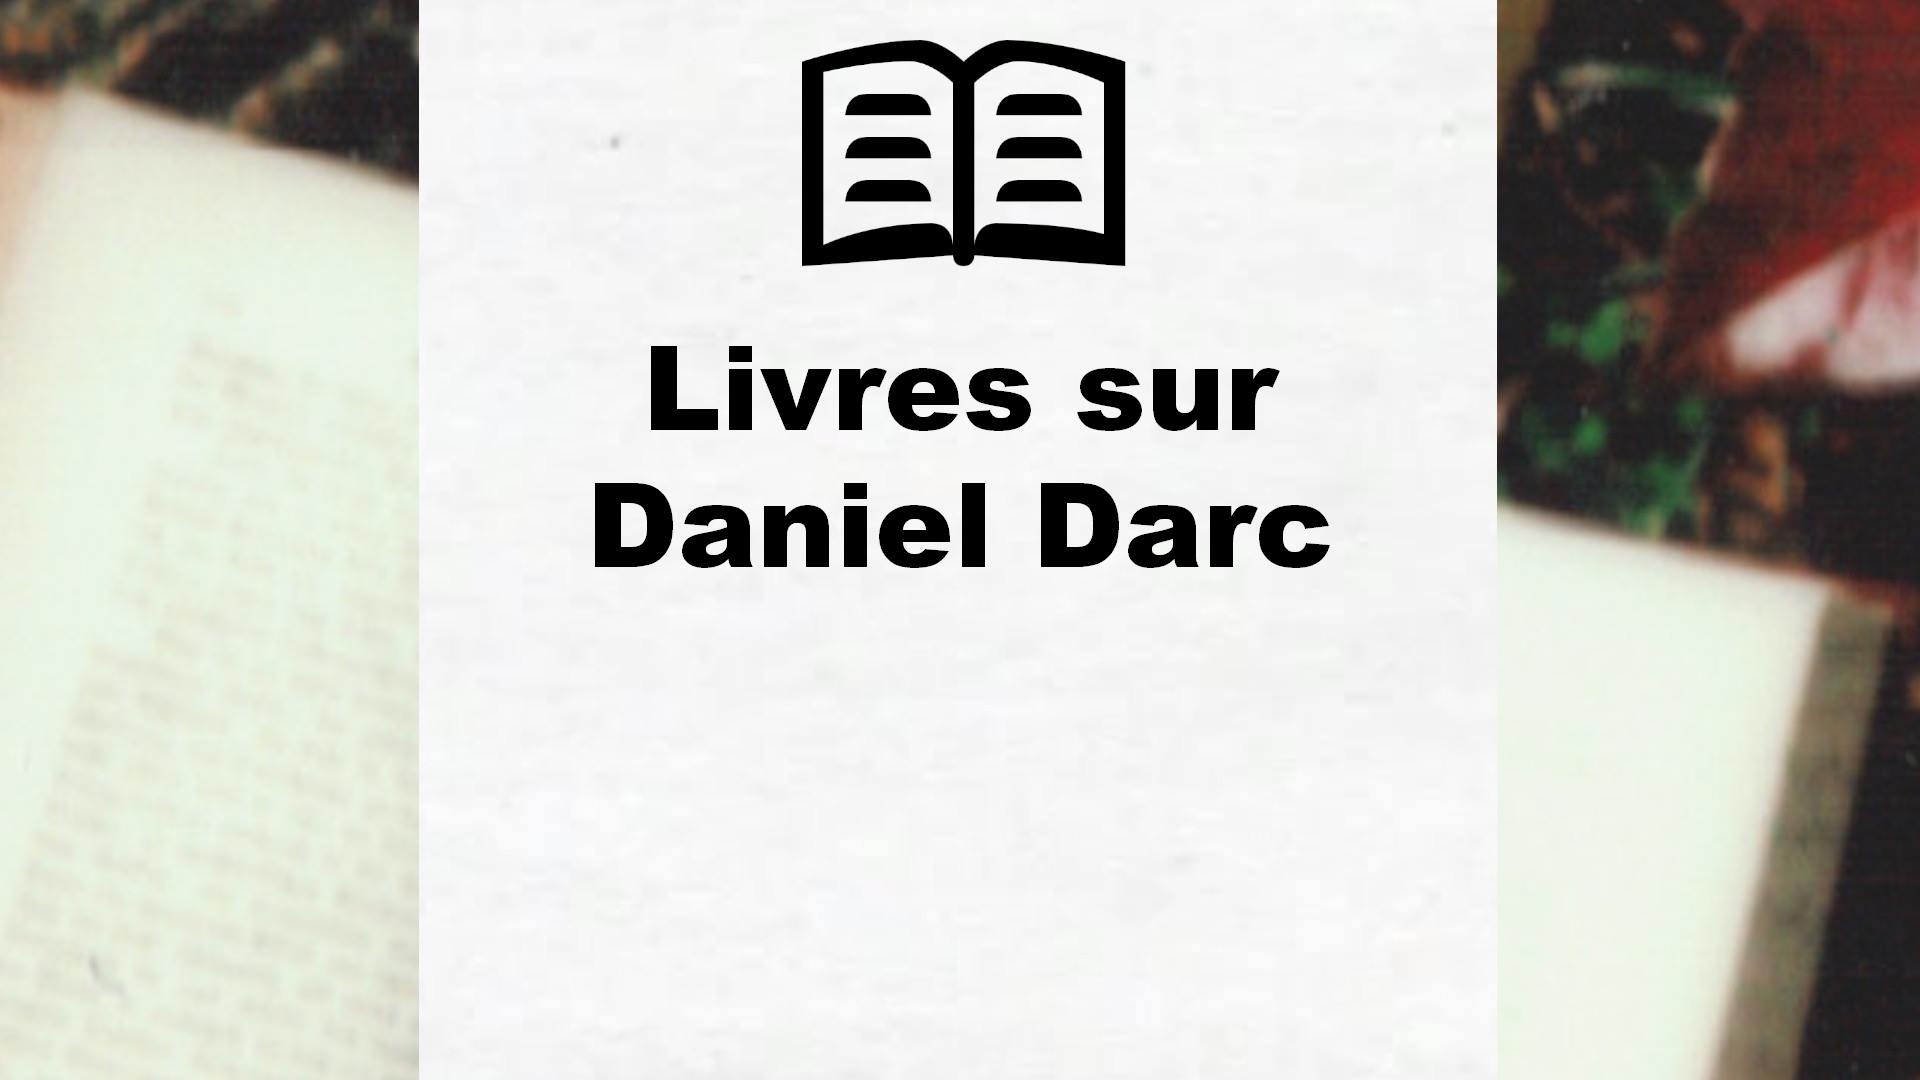 Livres sur Daniel Darc